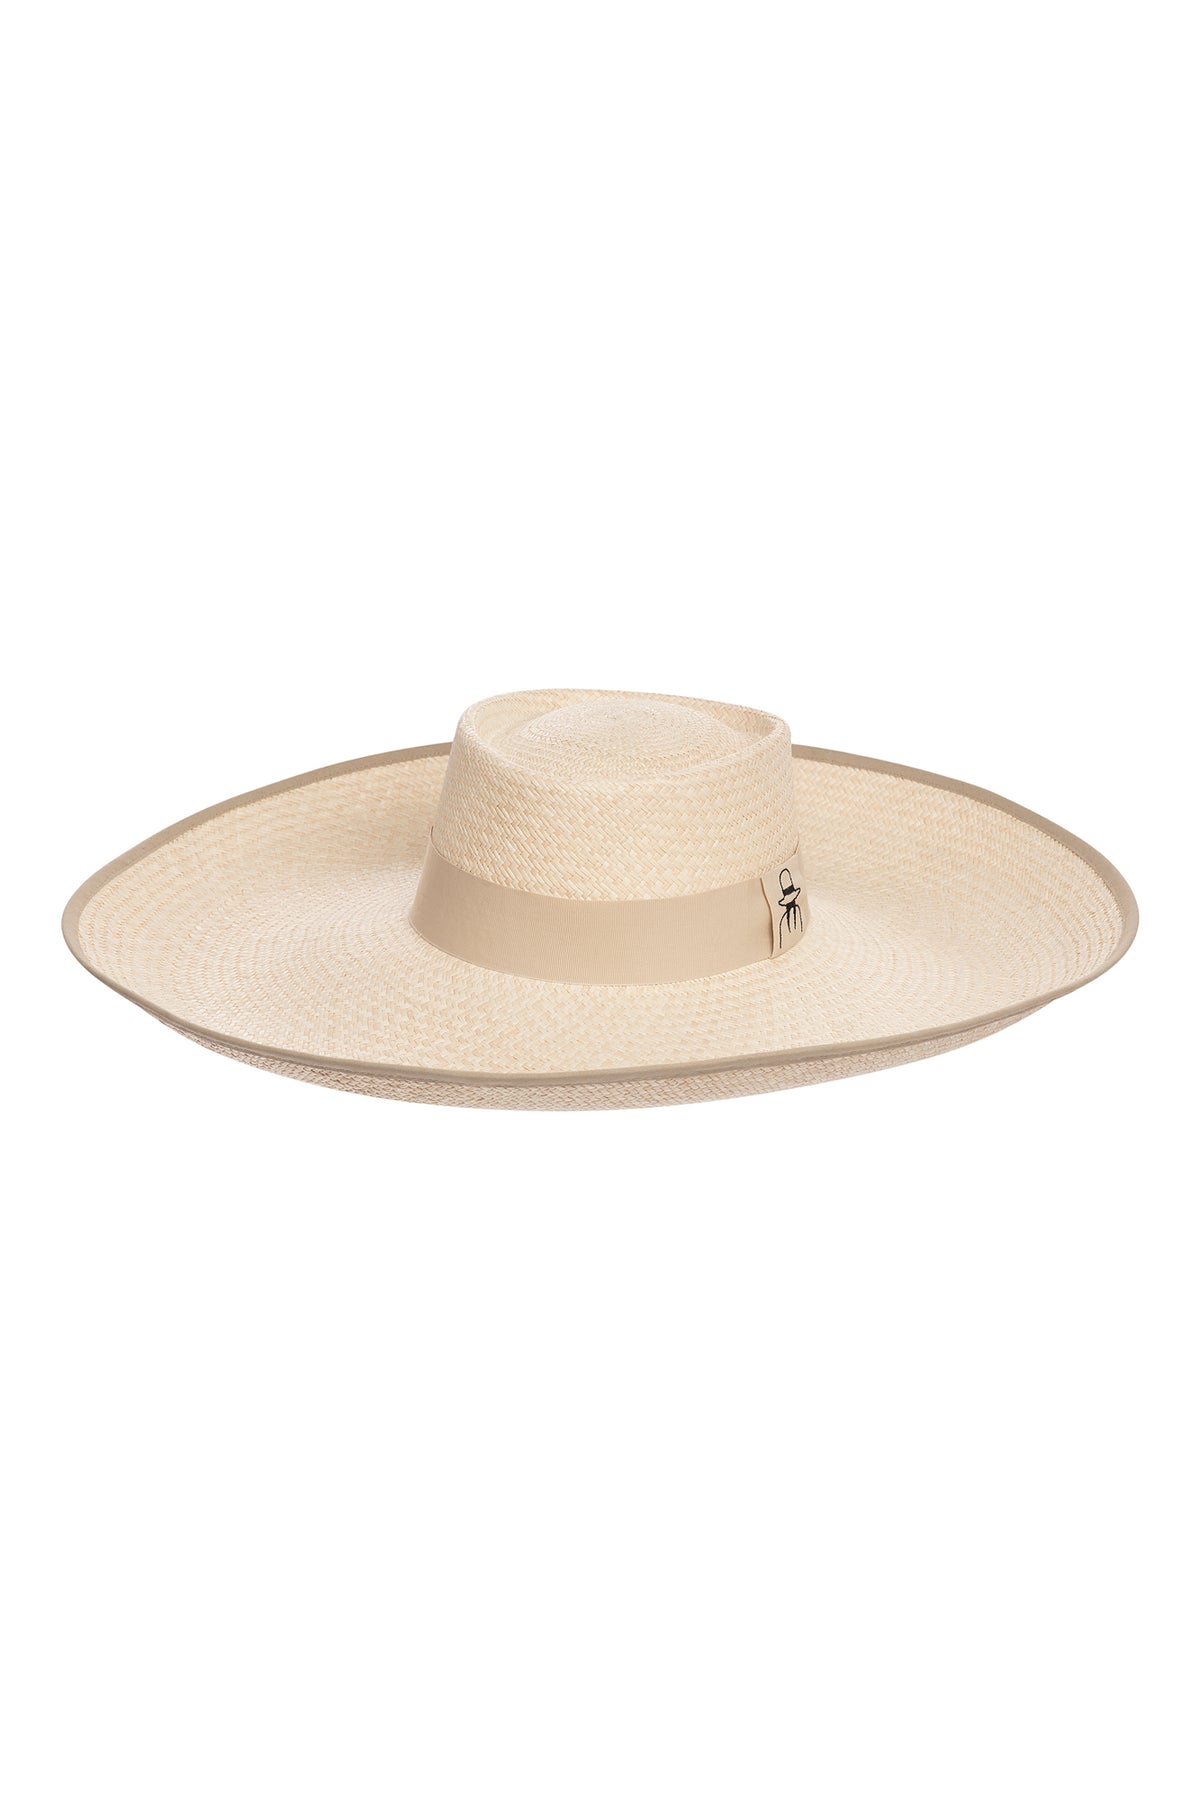 Carolina K Resort Cielo Hat in Natural